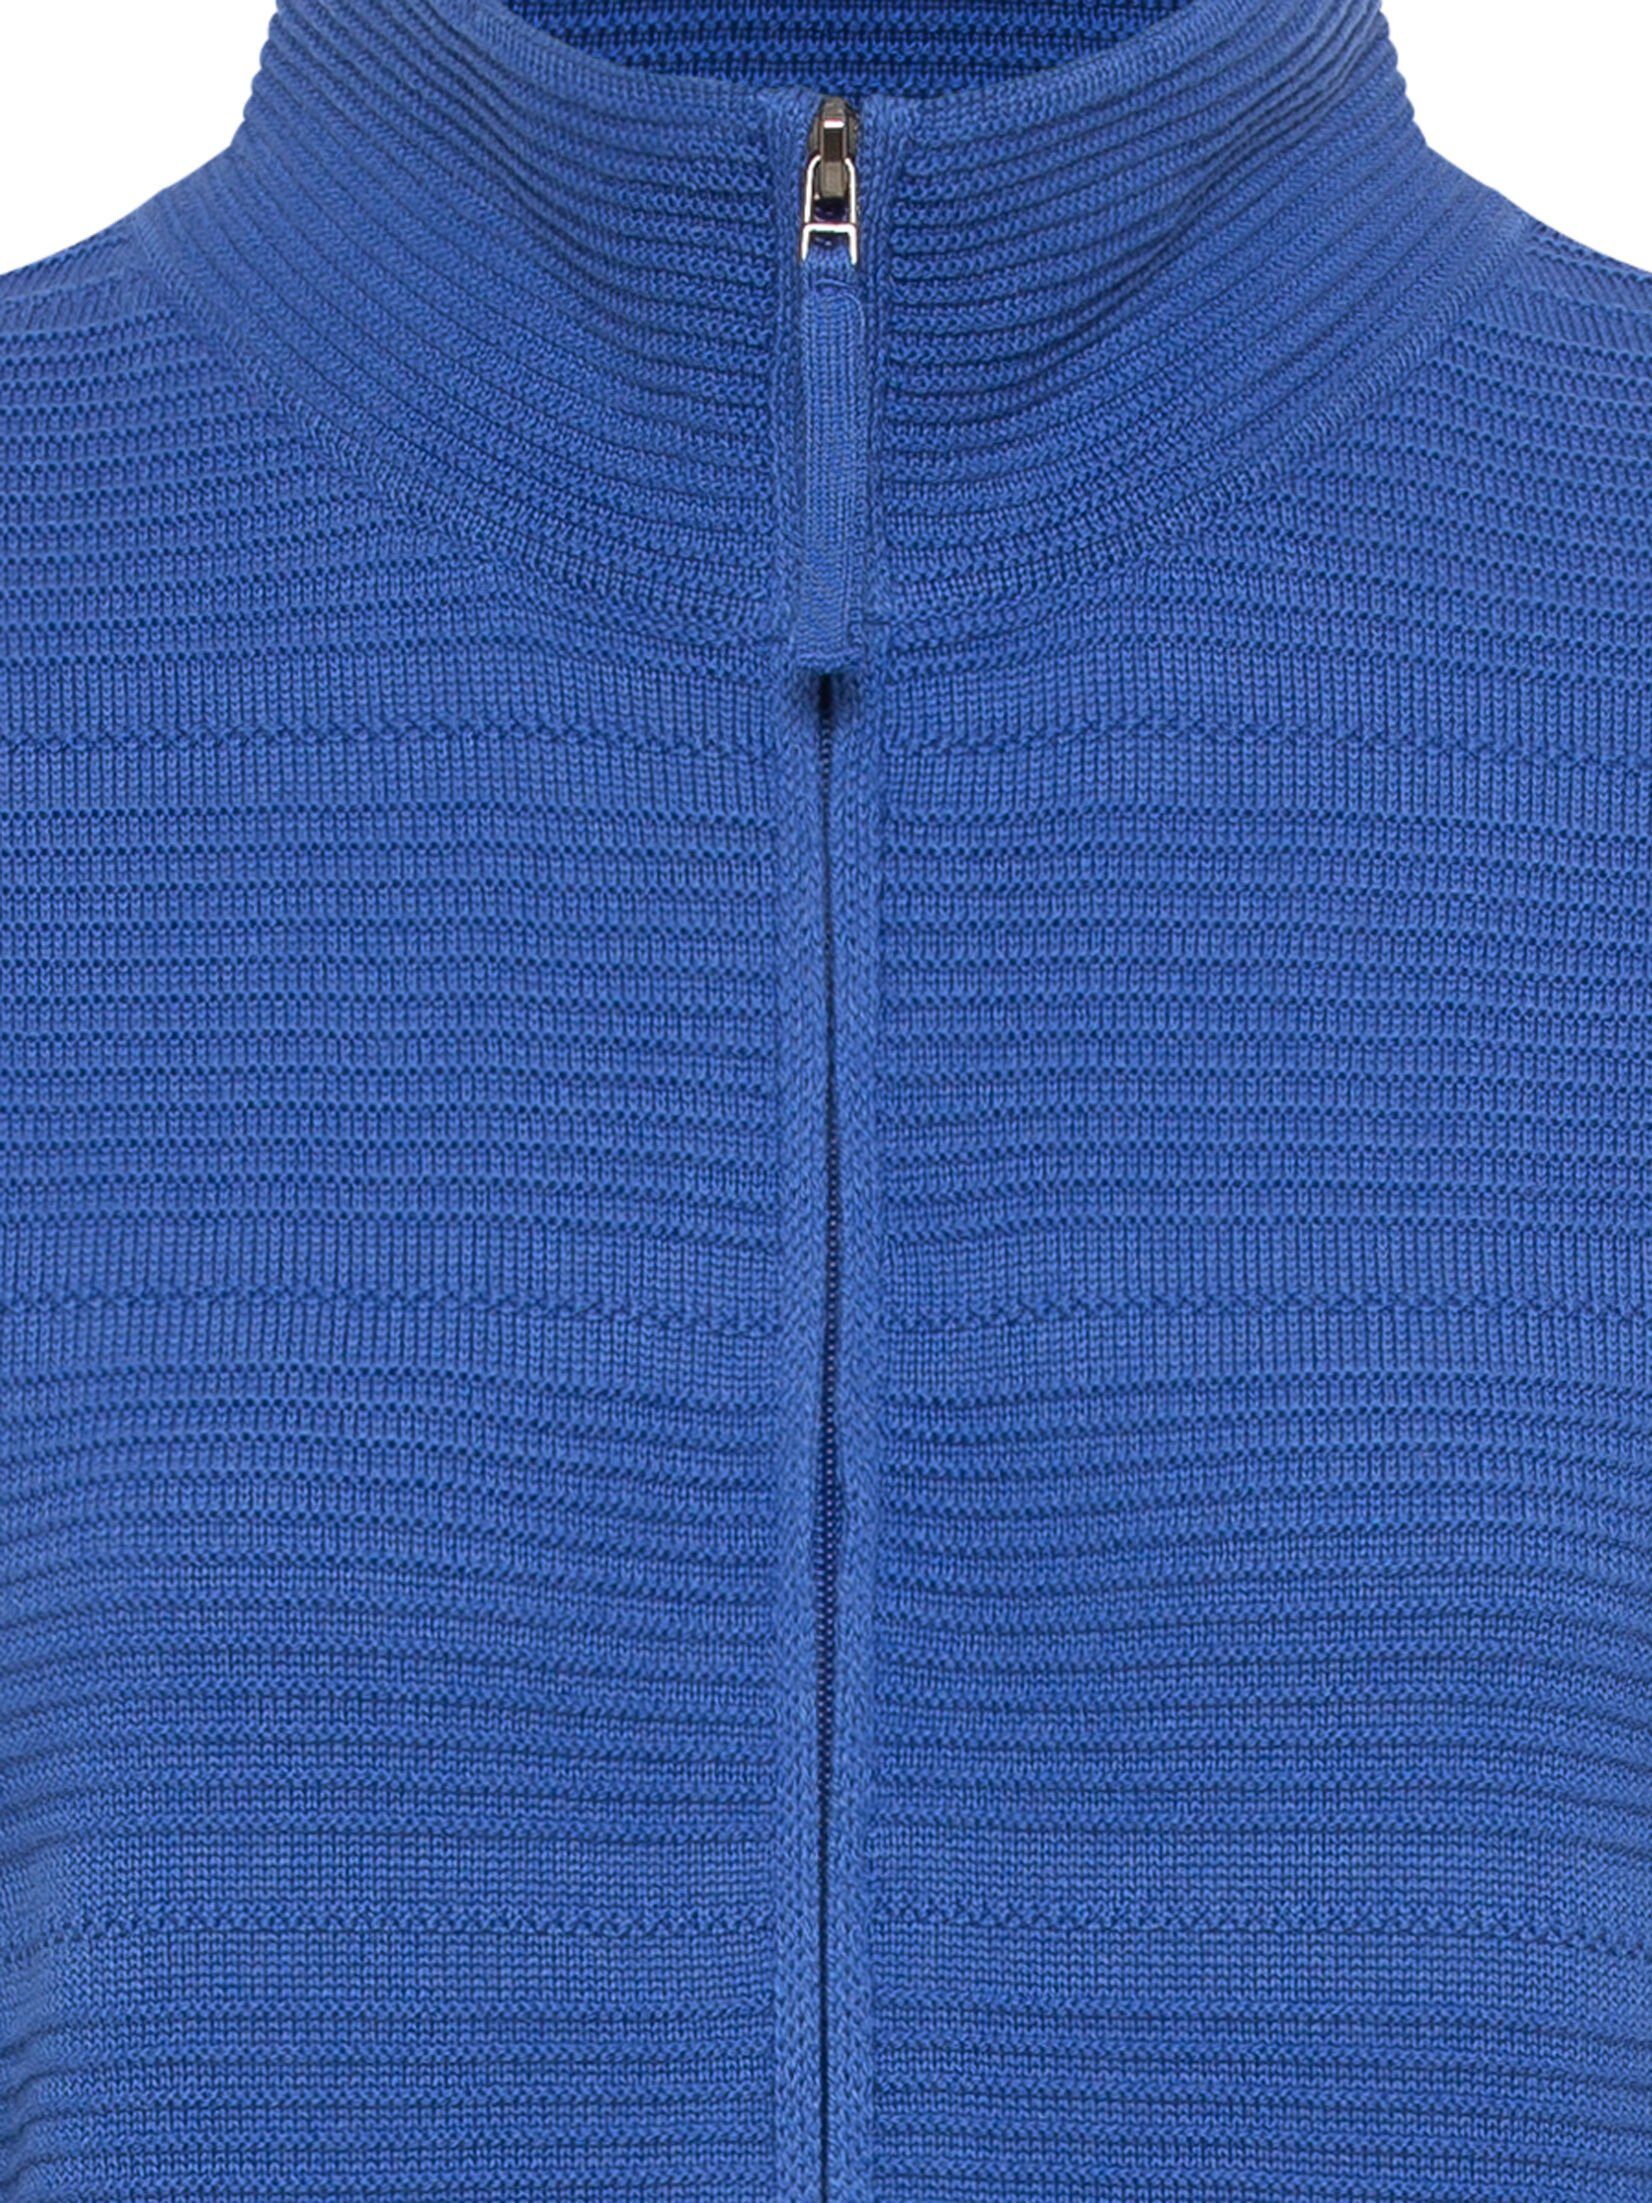 Blue Reißverschluss im Cardigan und Olsen Design mit Electric unifarbenen Eva